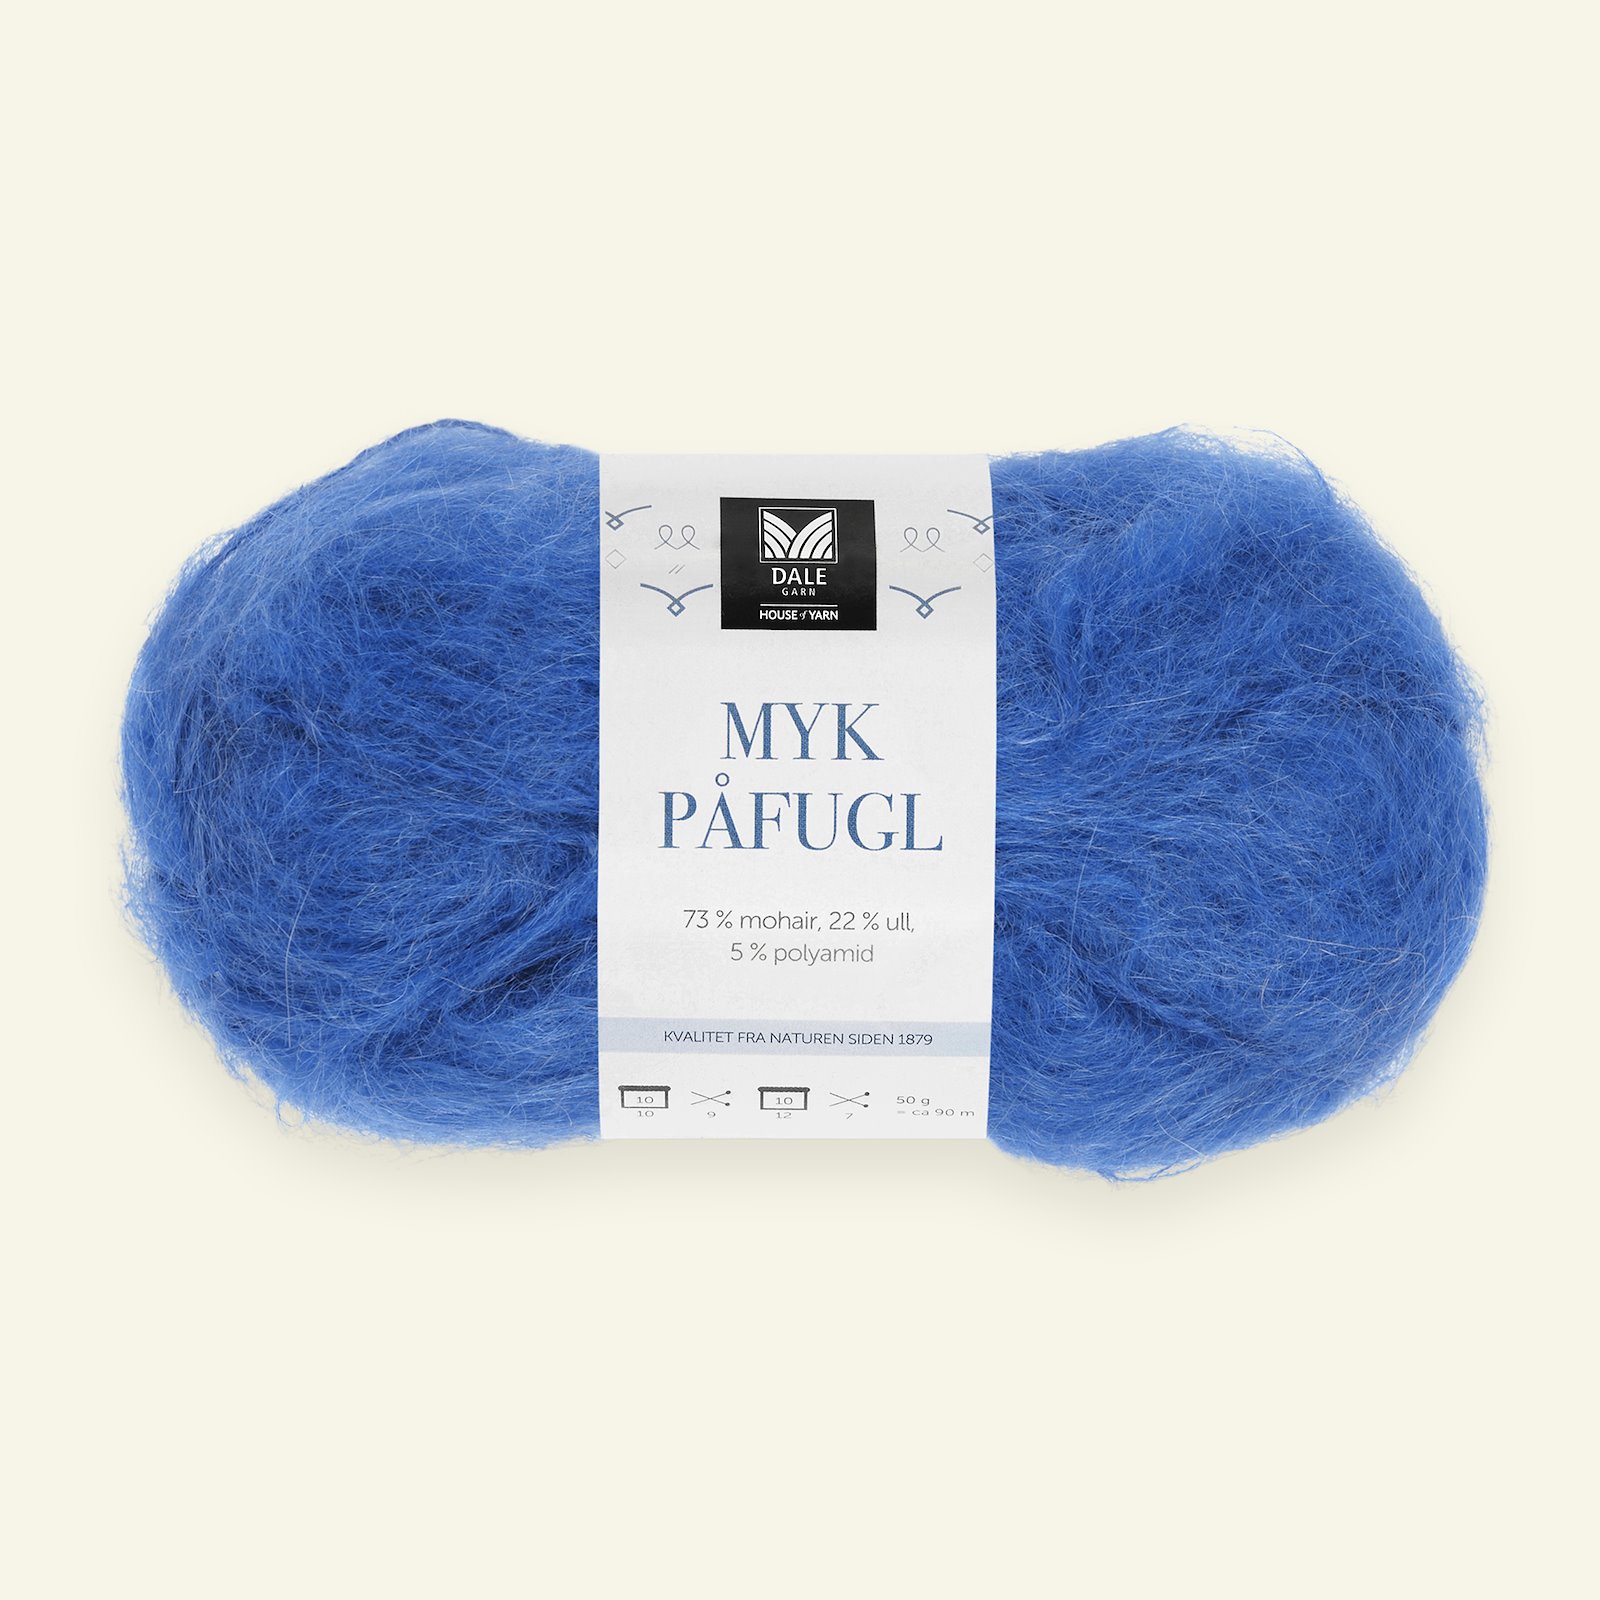 På forhånd Spytte ud frihed Dale Garn, mohair/wool yarn "Myk Påfugl", cobolt | Selfmade® (Stoff & Stil)